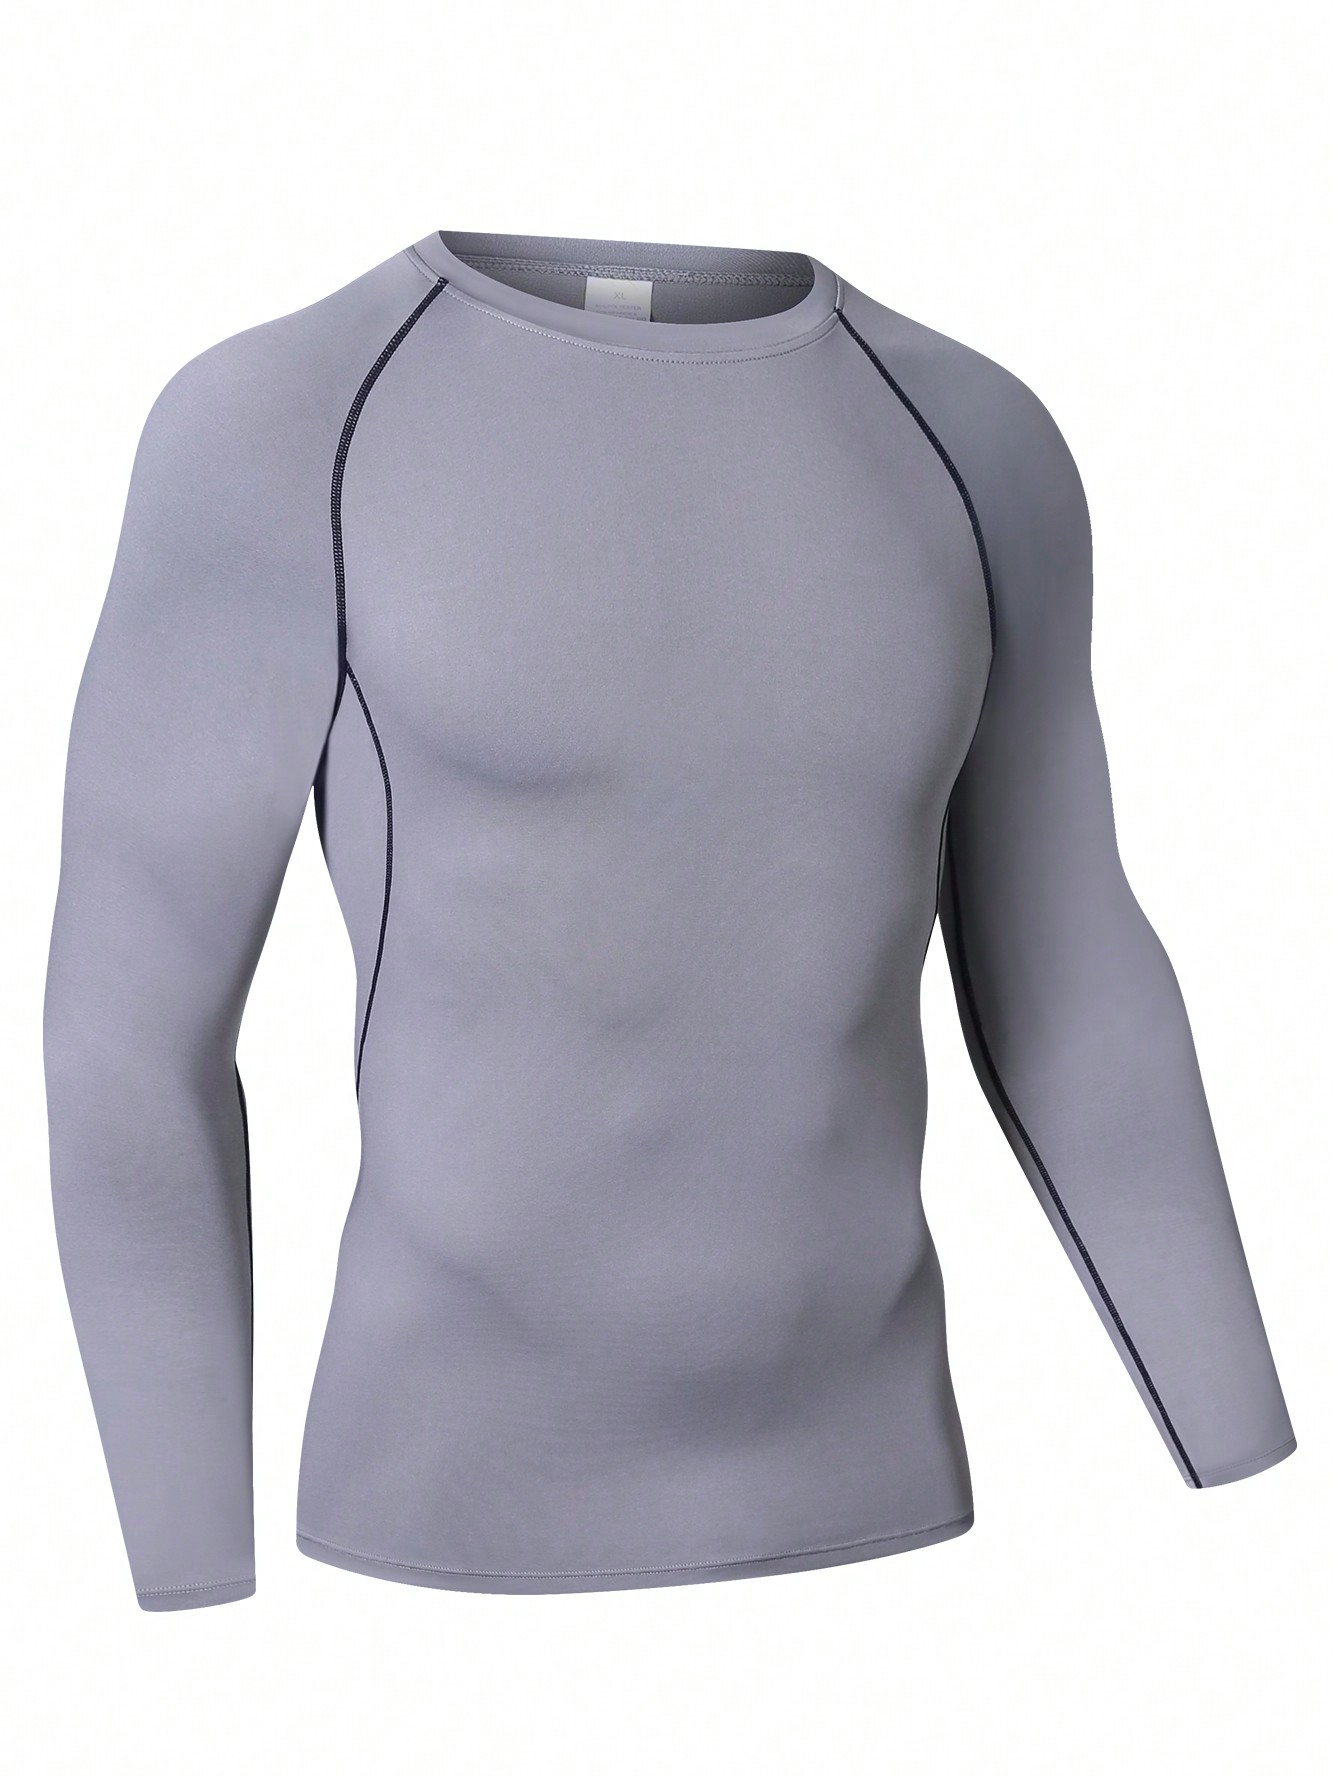 Мужская эластичная компрессионная рубашка для фитнеса с длинными рукавами, серый футболка cep ультралёгкая с длинными рукавами мужская